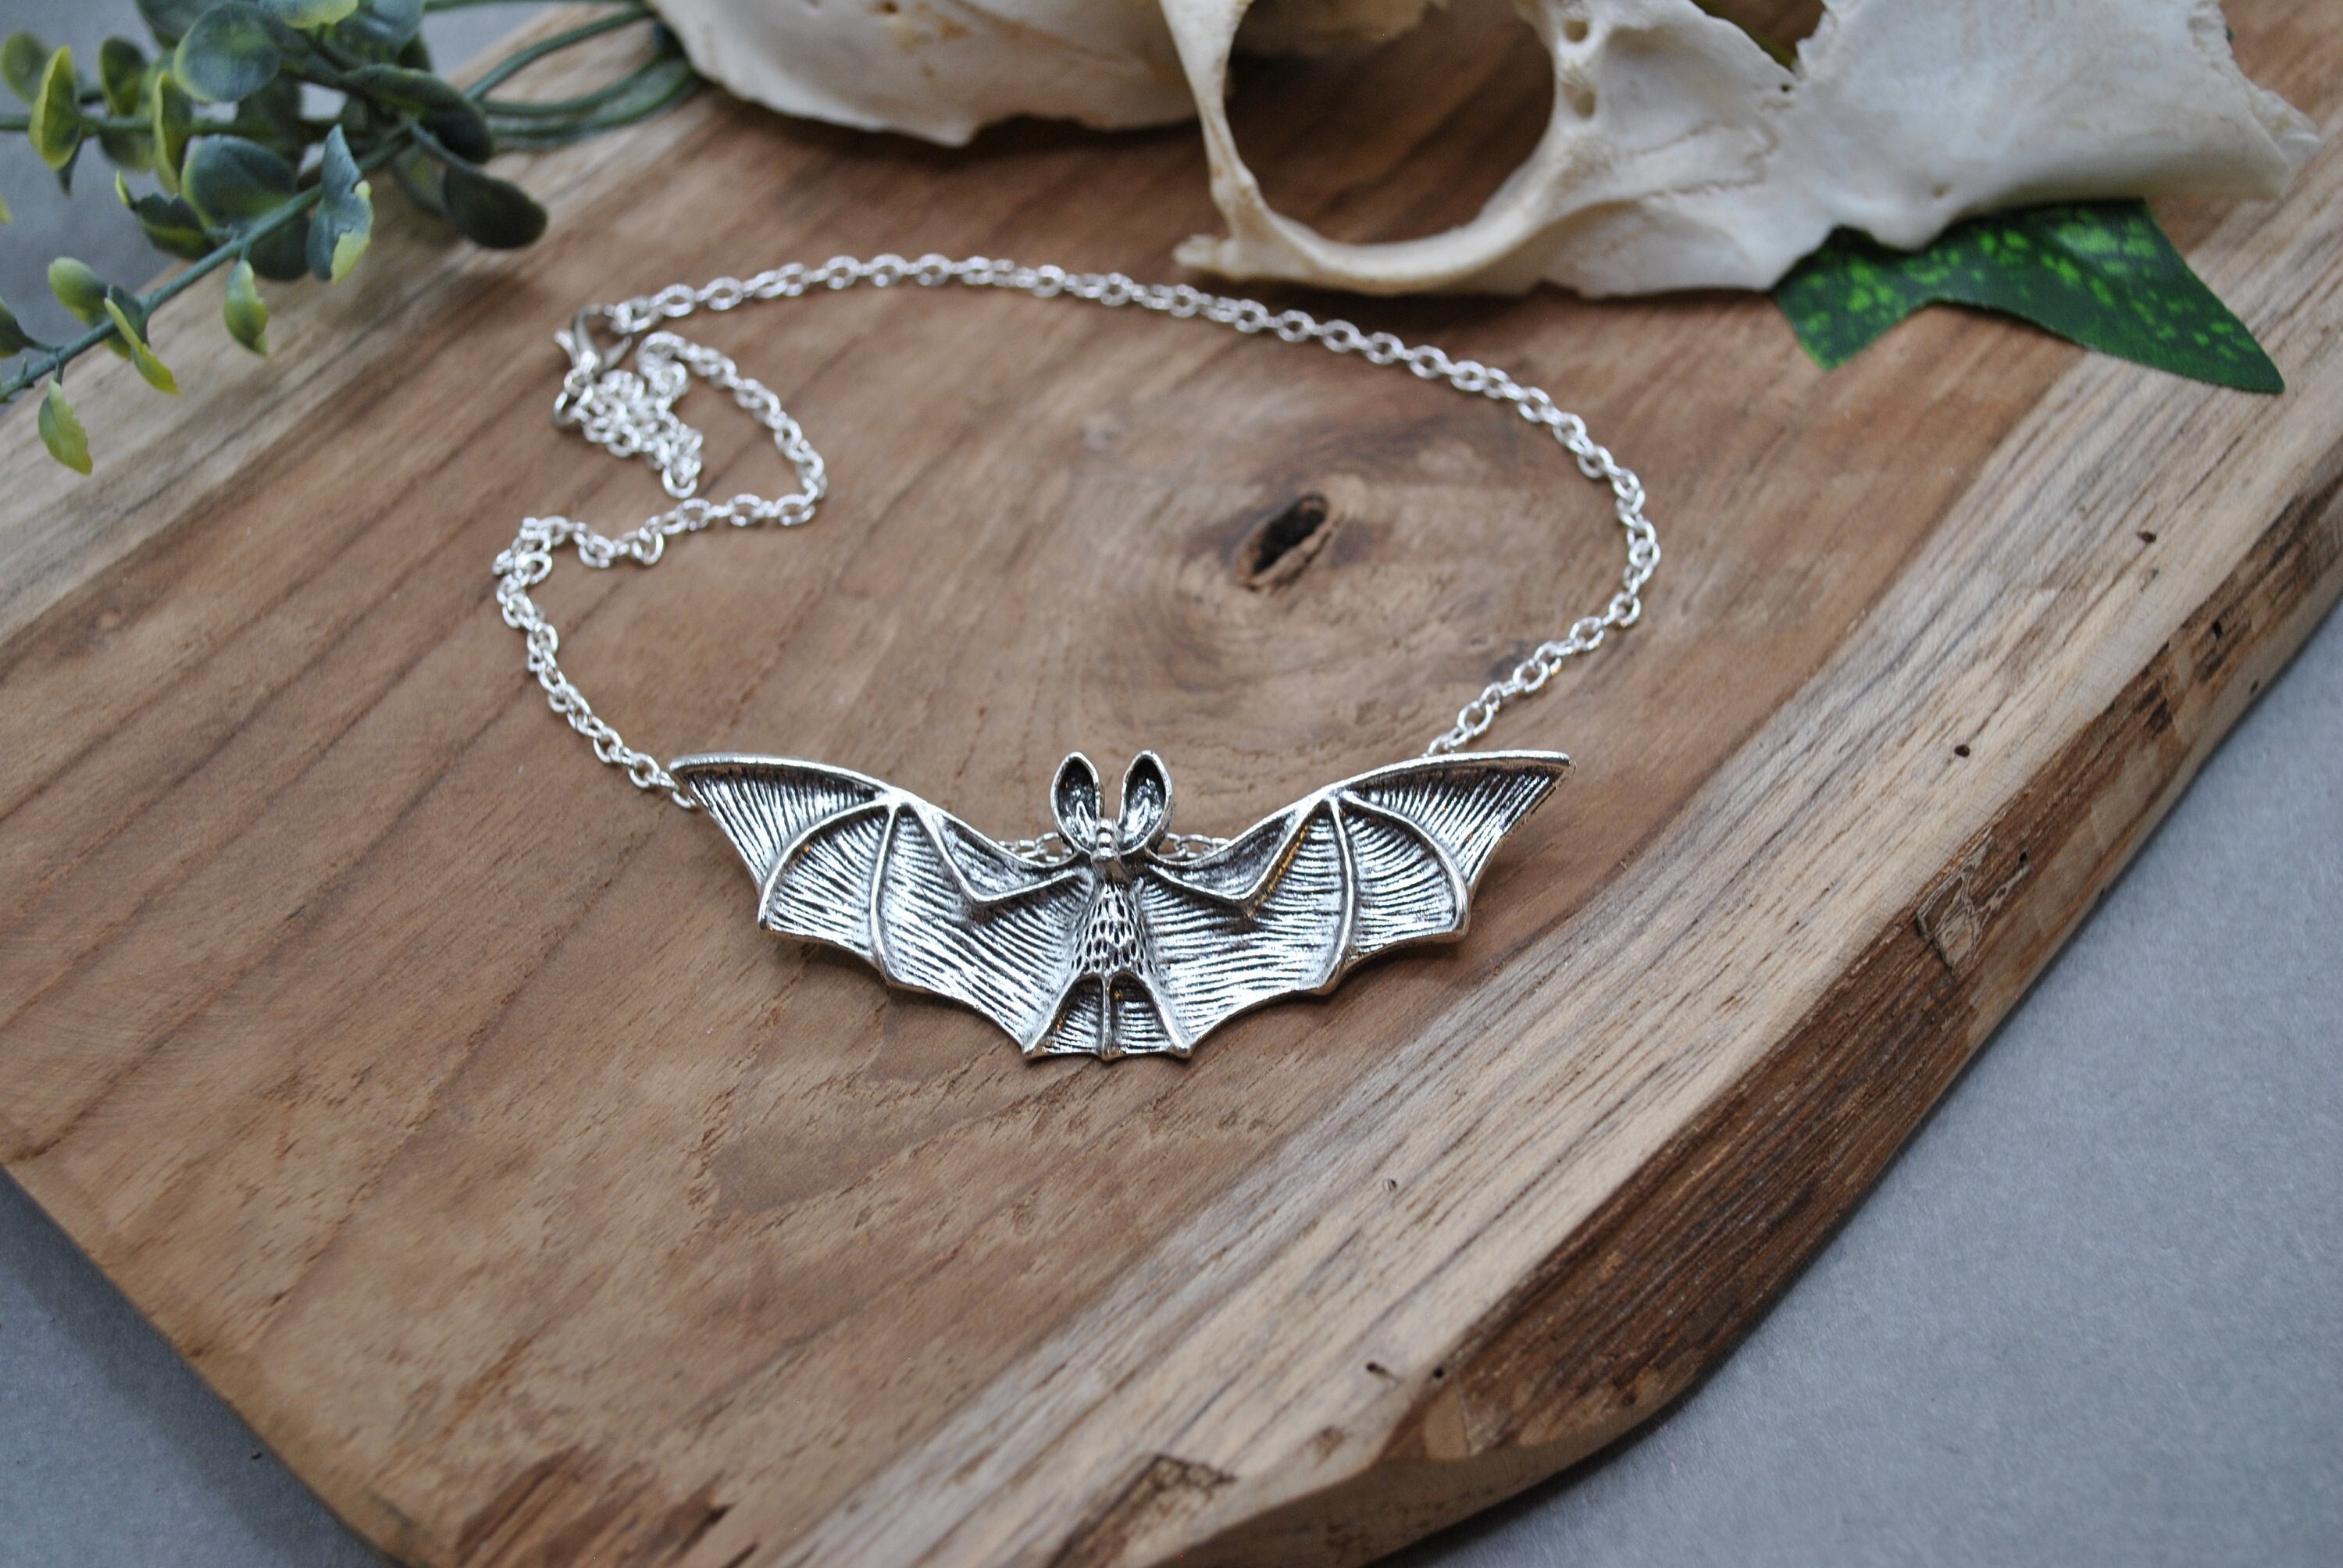 VENACOLY Bat Necklace Sterling Silver Bat Pentagram Pendant Necklace Gothic  Jewelry for Men Women : Amazon.co.uk: Fashion